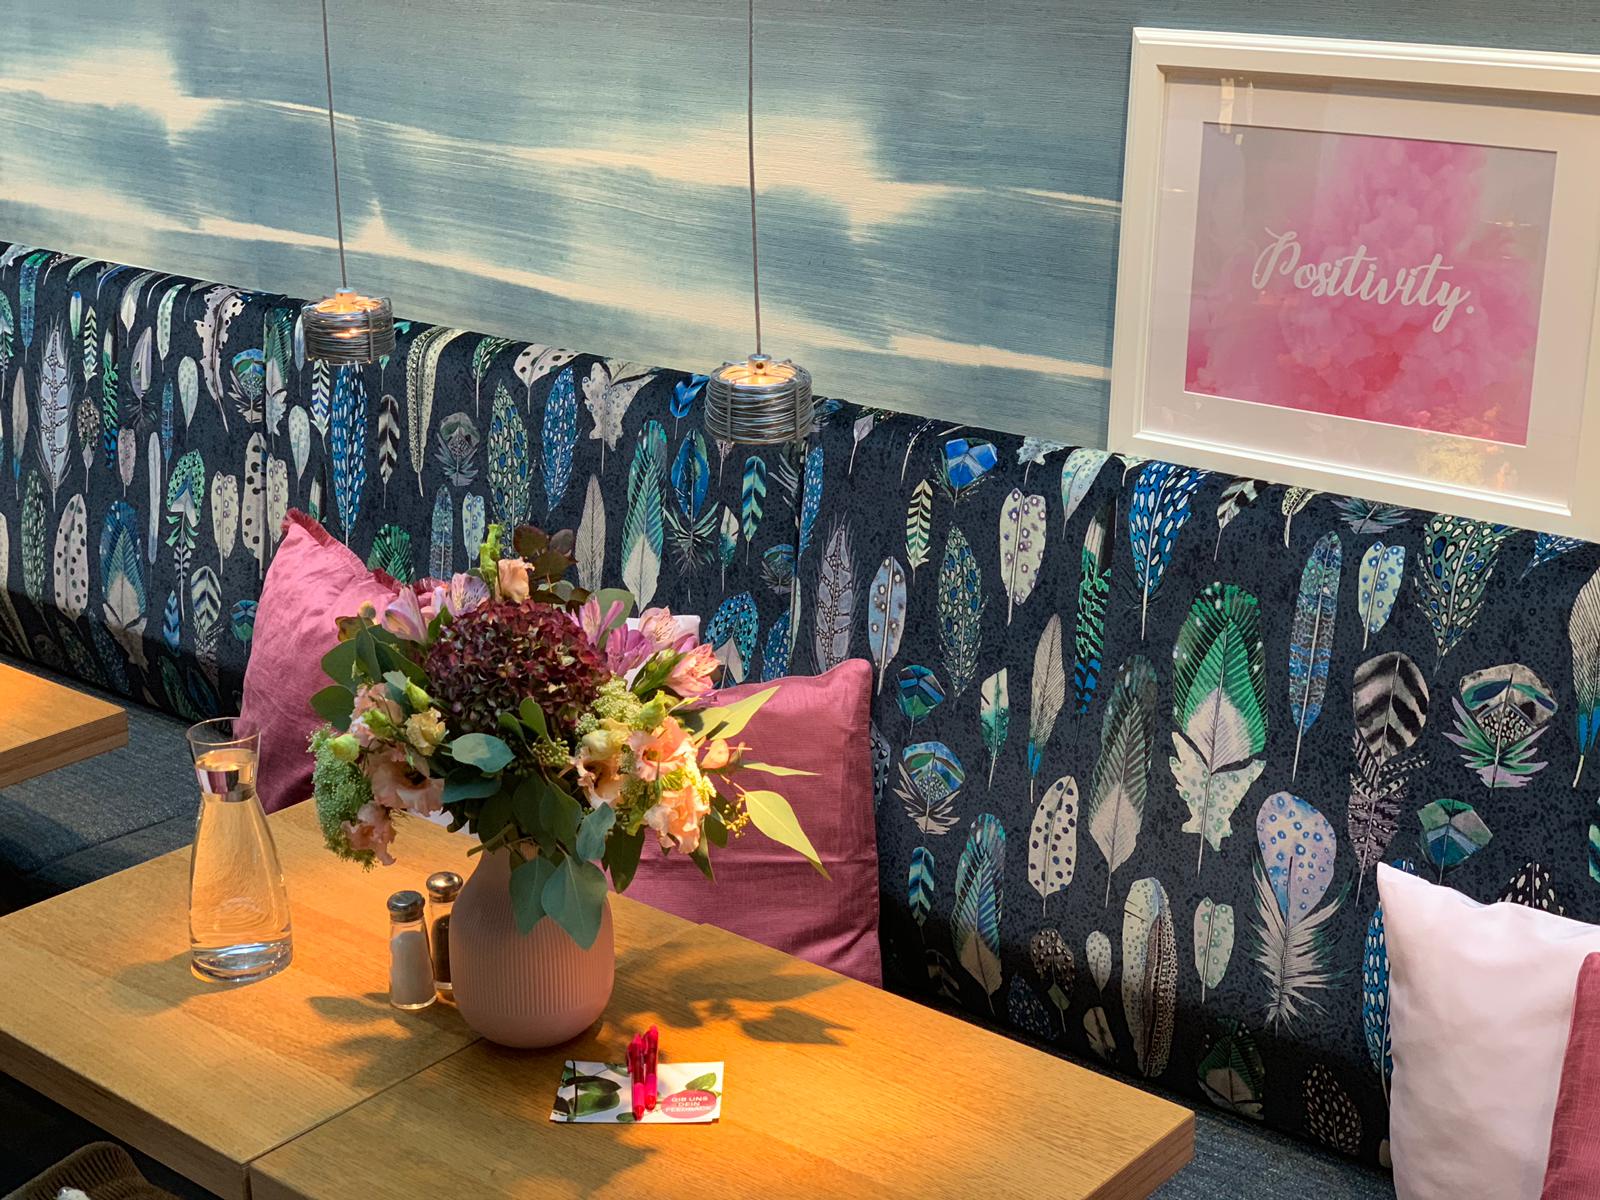 Eine Café-Lounge mit Blumen, Kissen und Bildern.